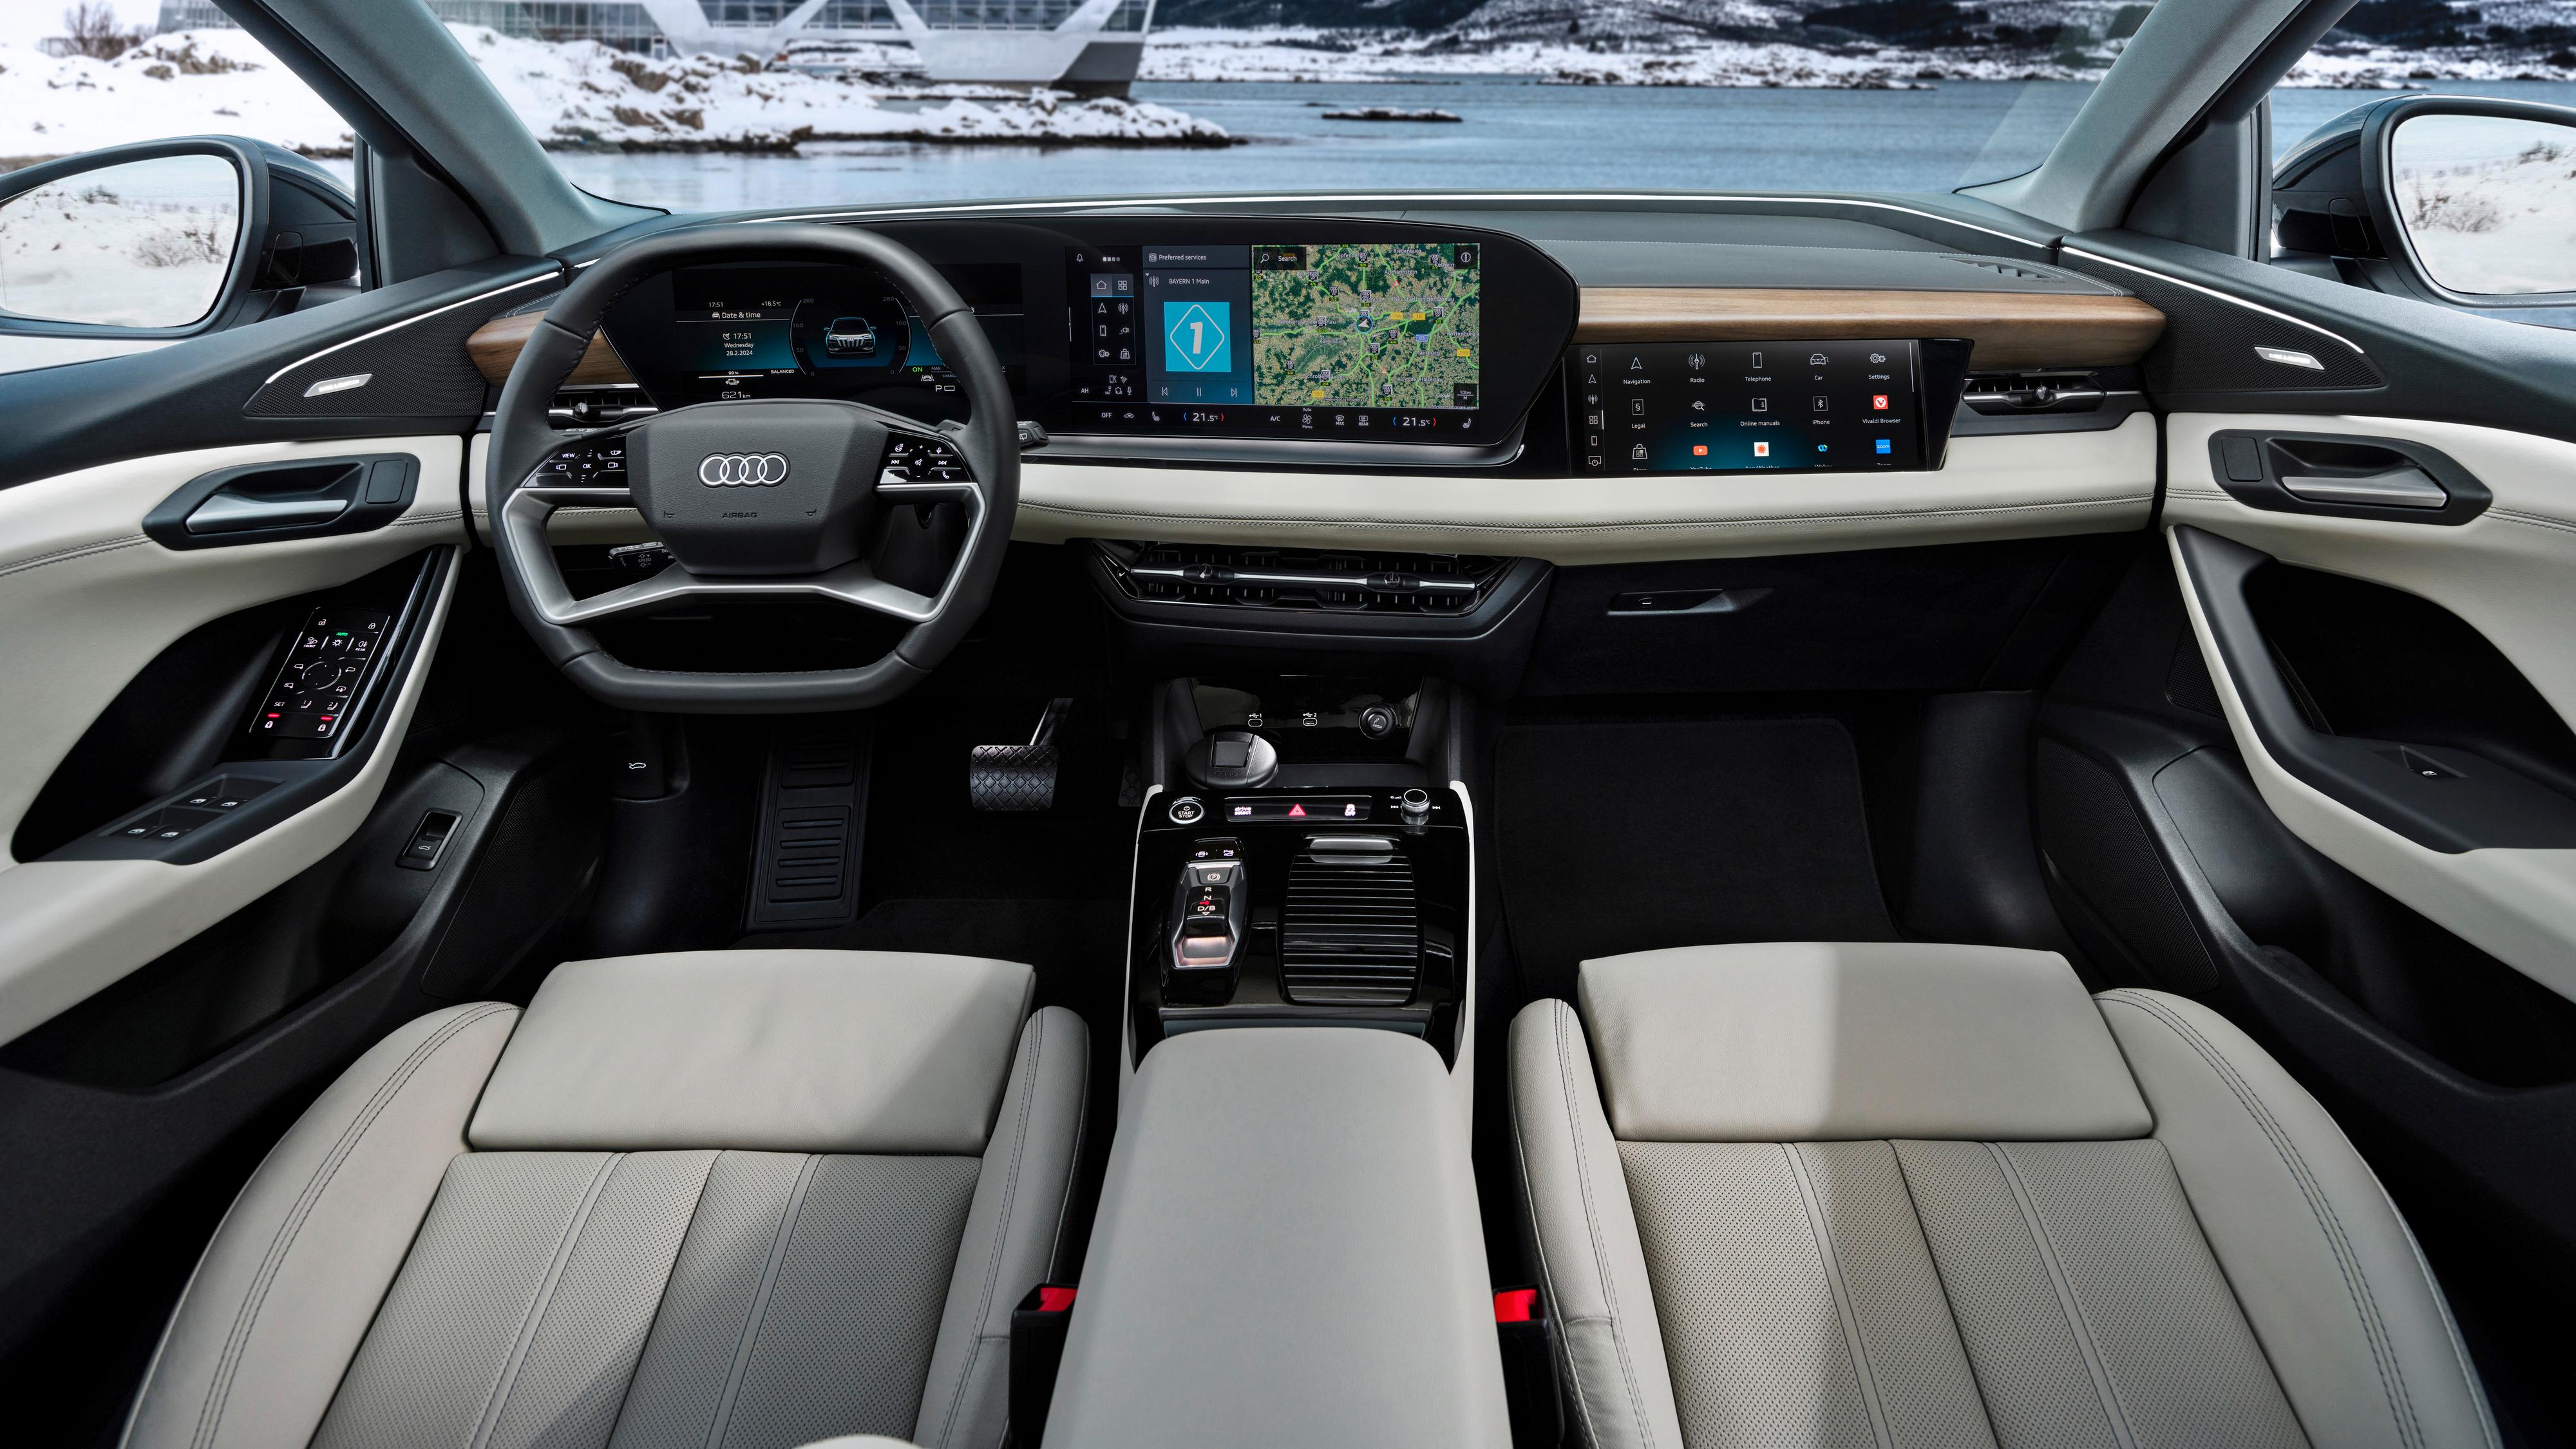 Android Automotive i infotainmentsystemet og mulighet for egen skjerm til passasjeren - med innsynssperre for føreren. 